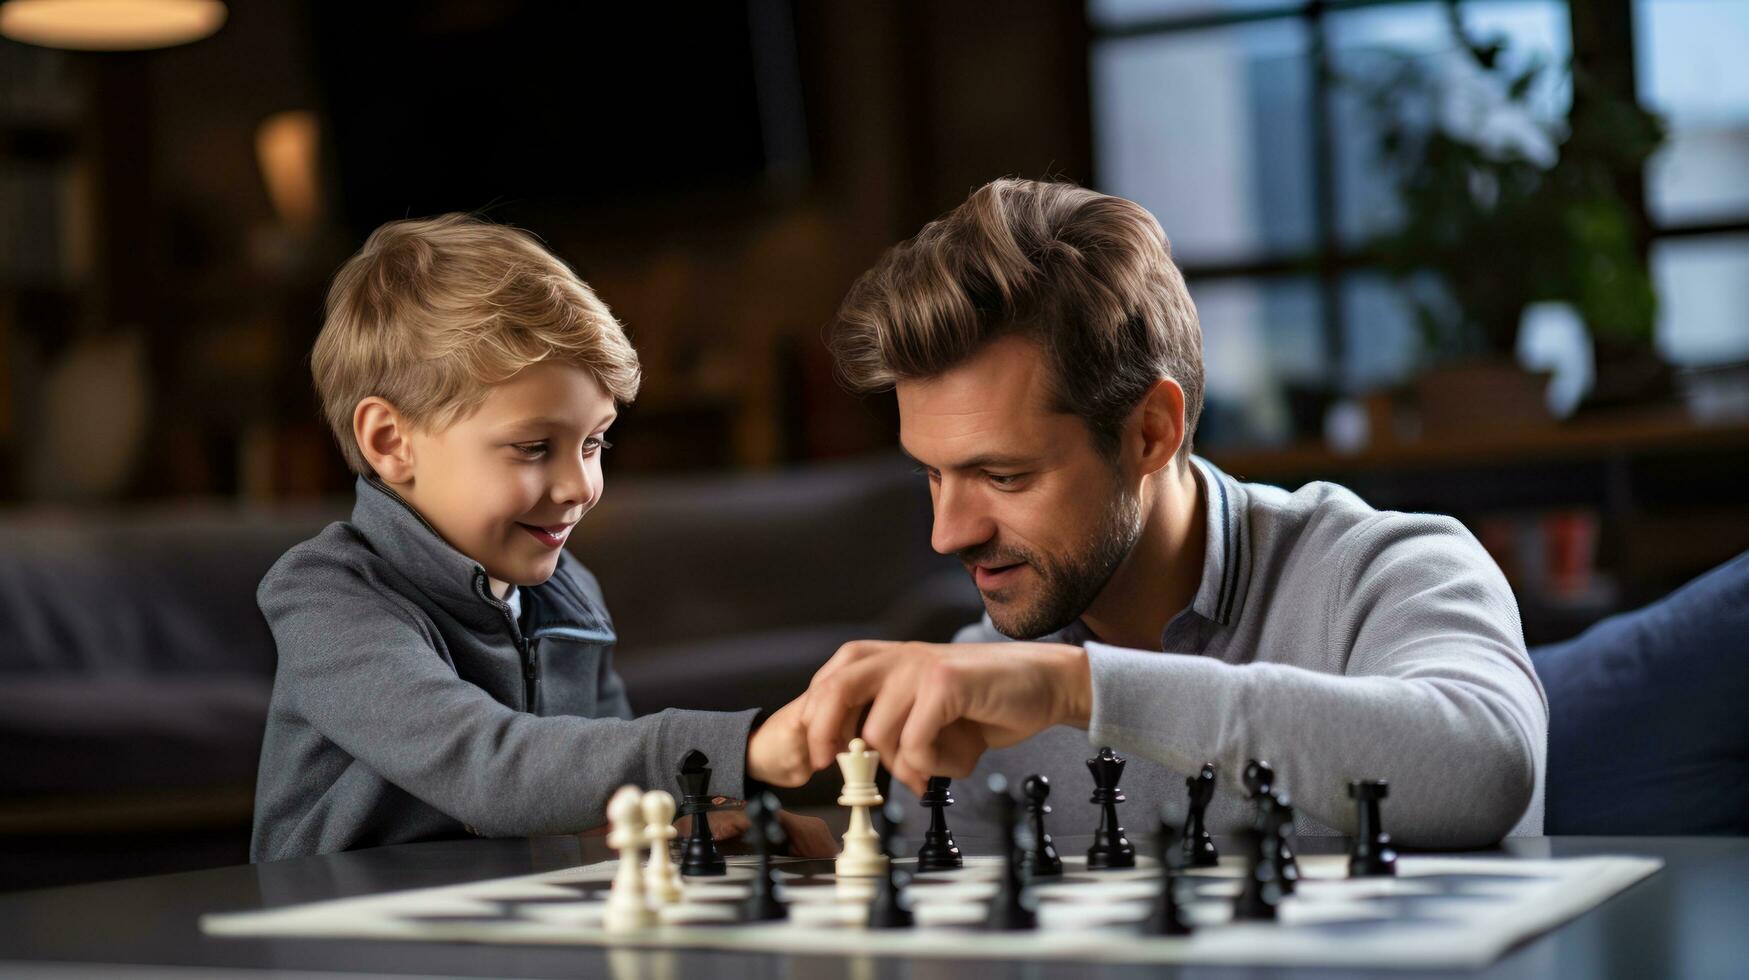 Papai e criança jogando xadrez foto